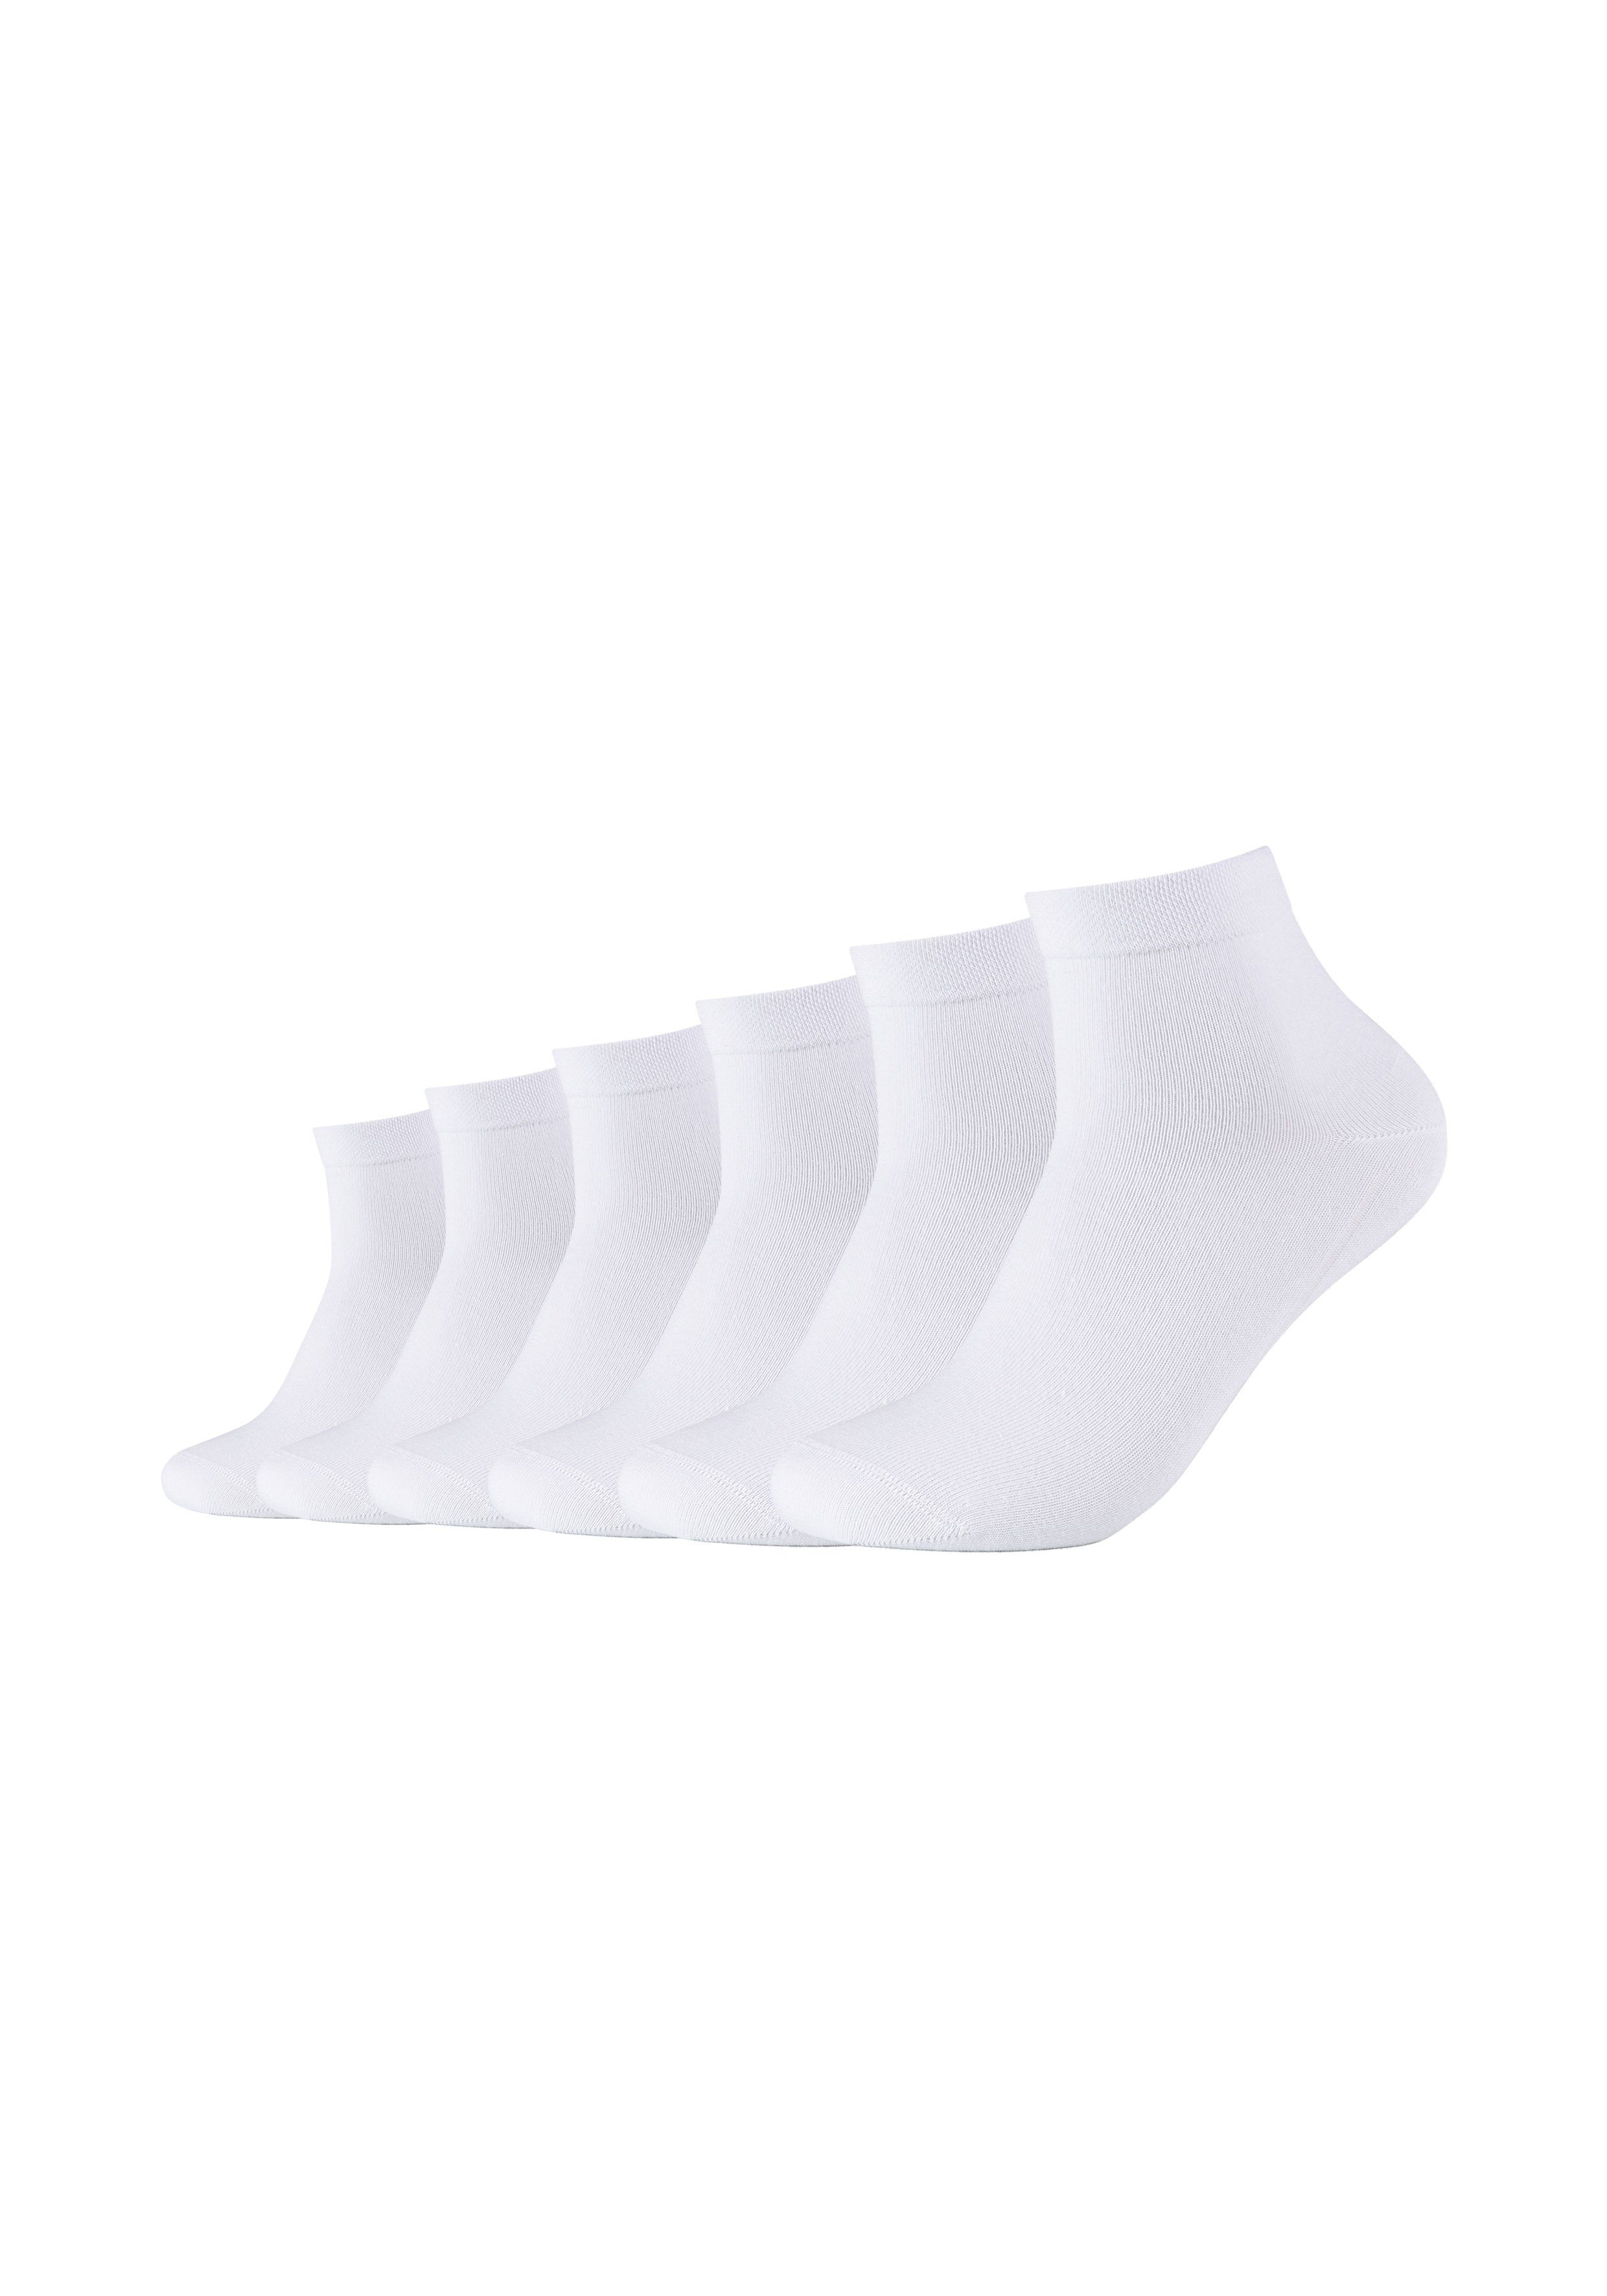 (6-Paar) mit ca-soft Camano ca-soft tollem Socken Komfort